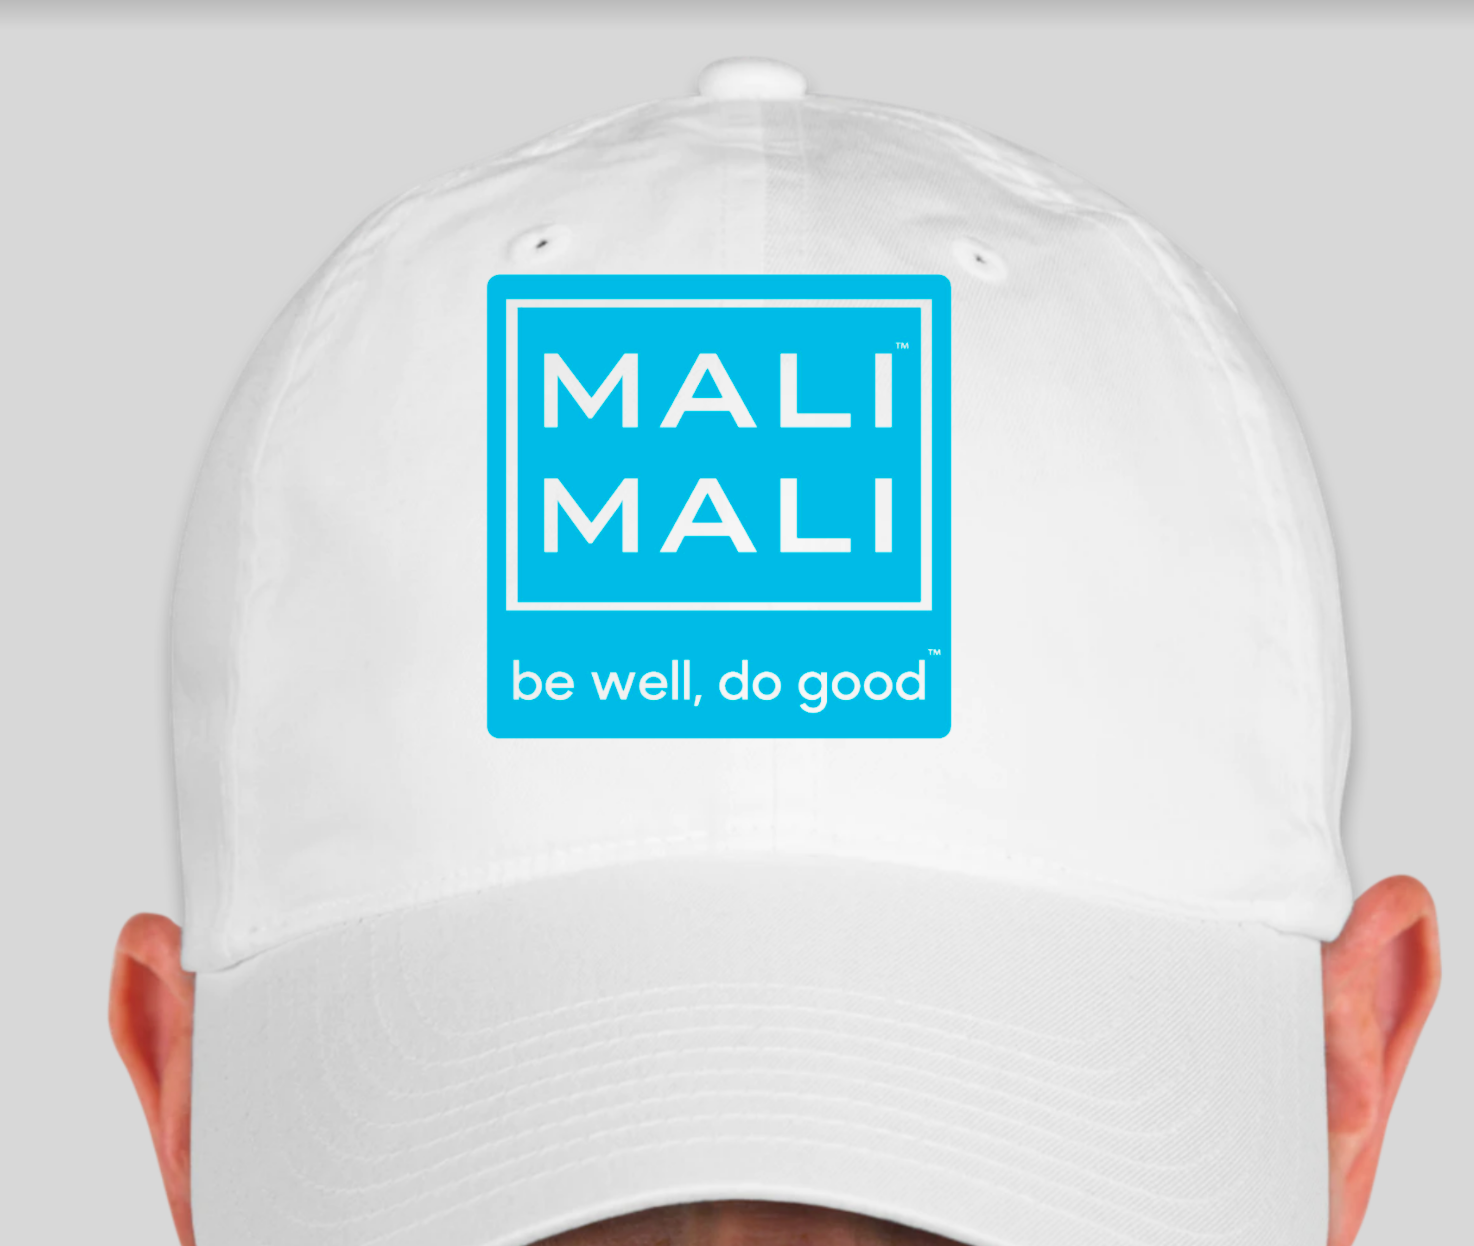 Mali Mali Hat